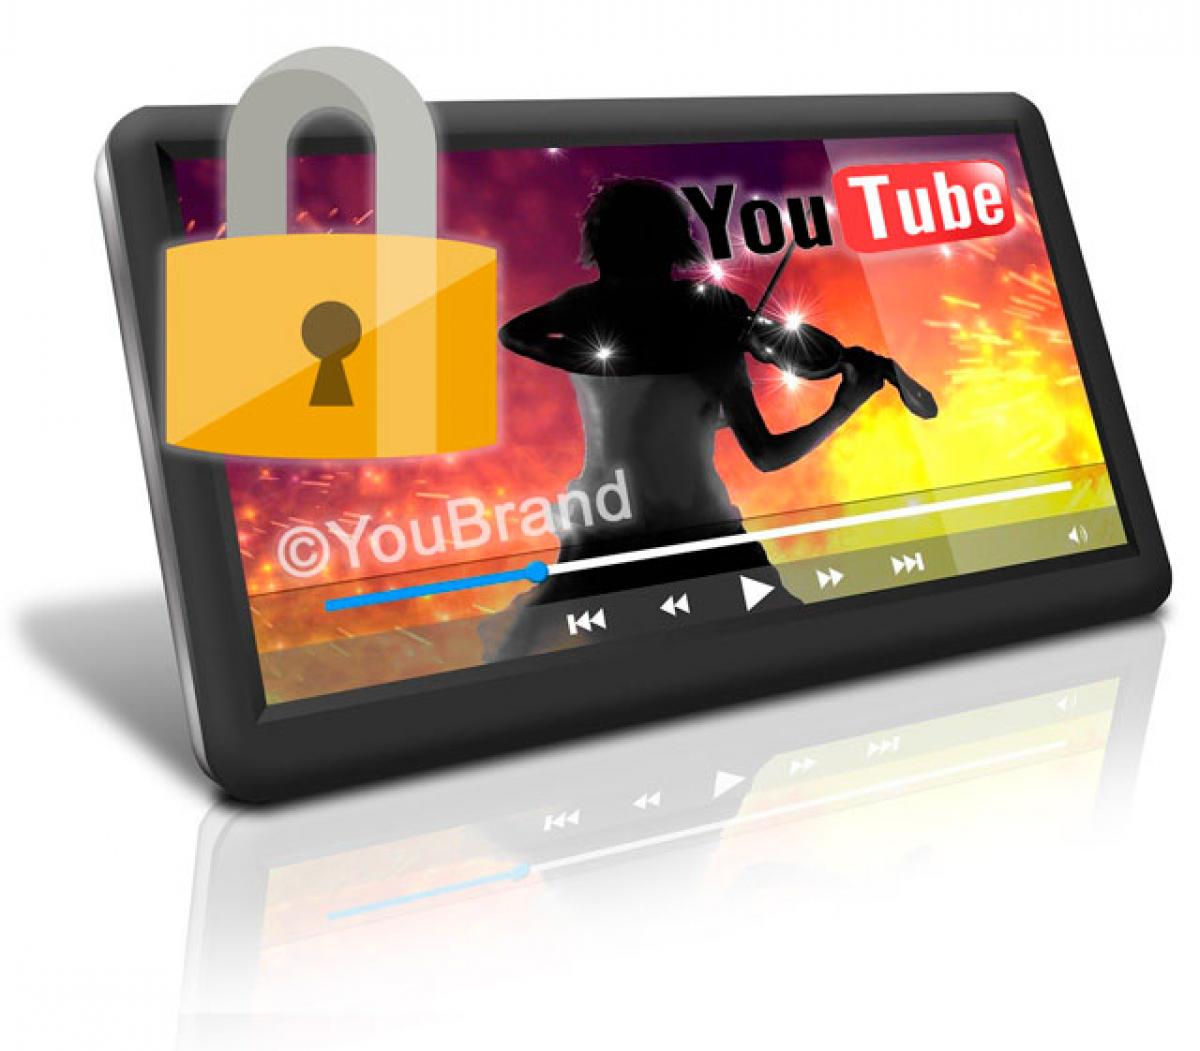 beskytte video med copyright.